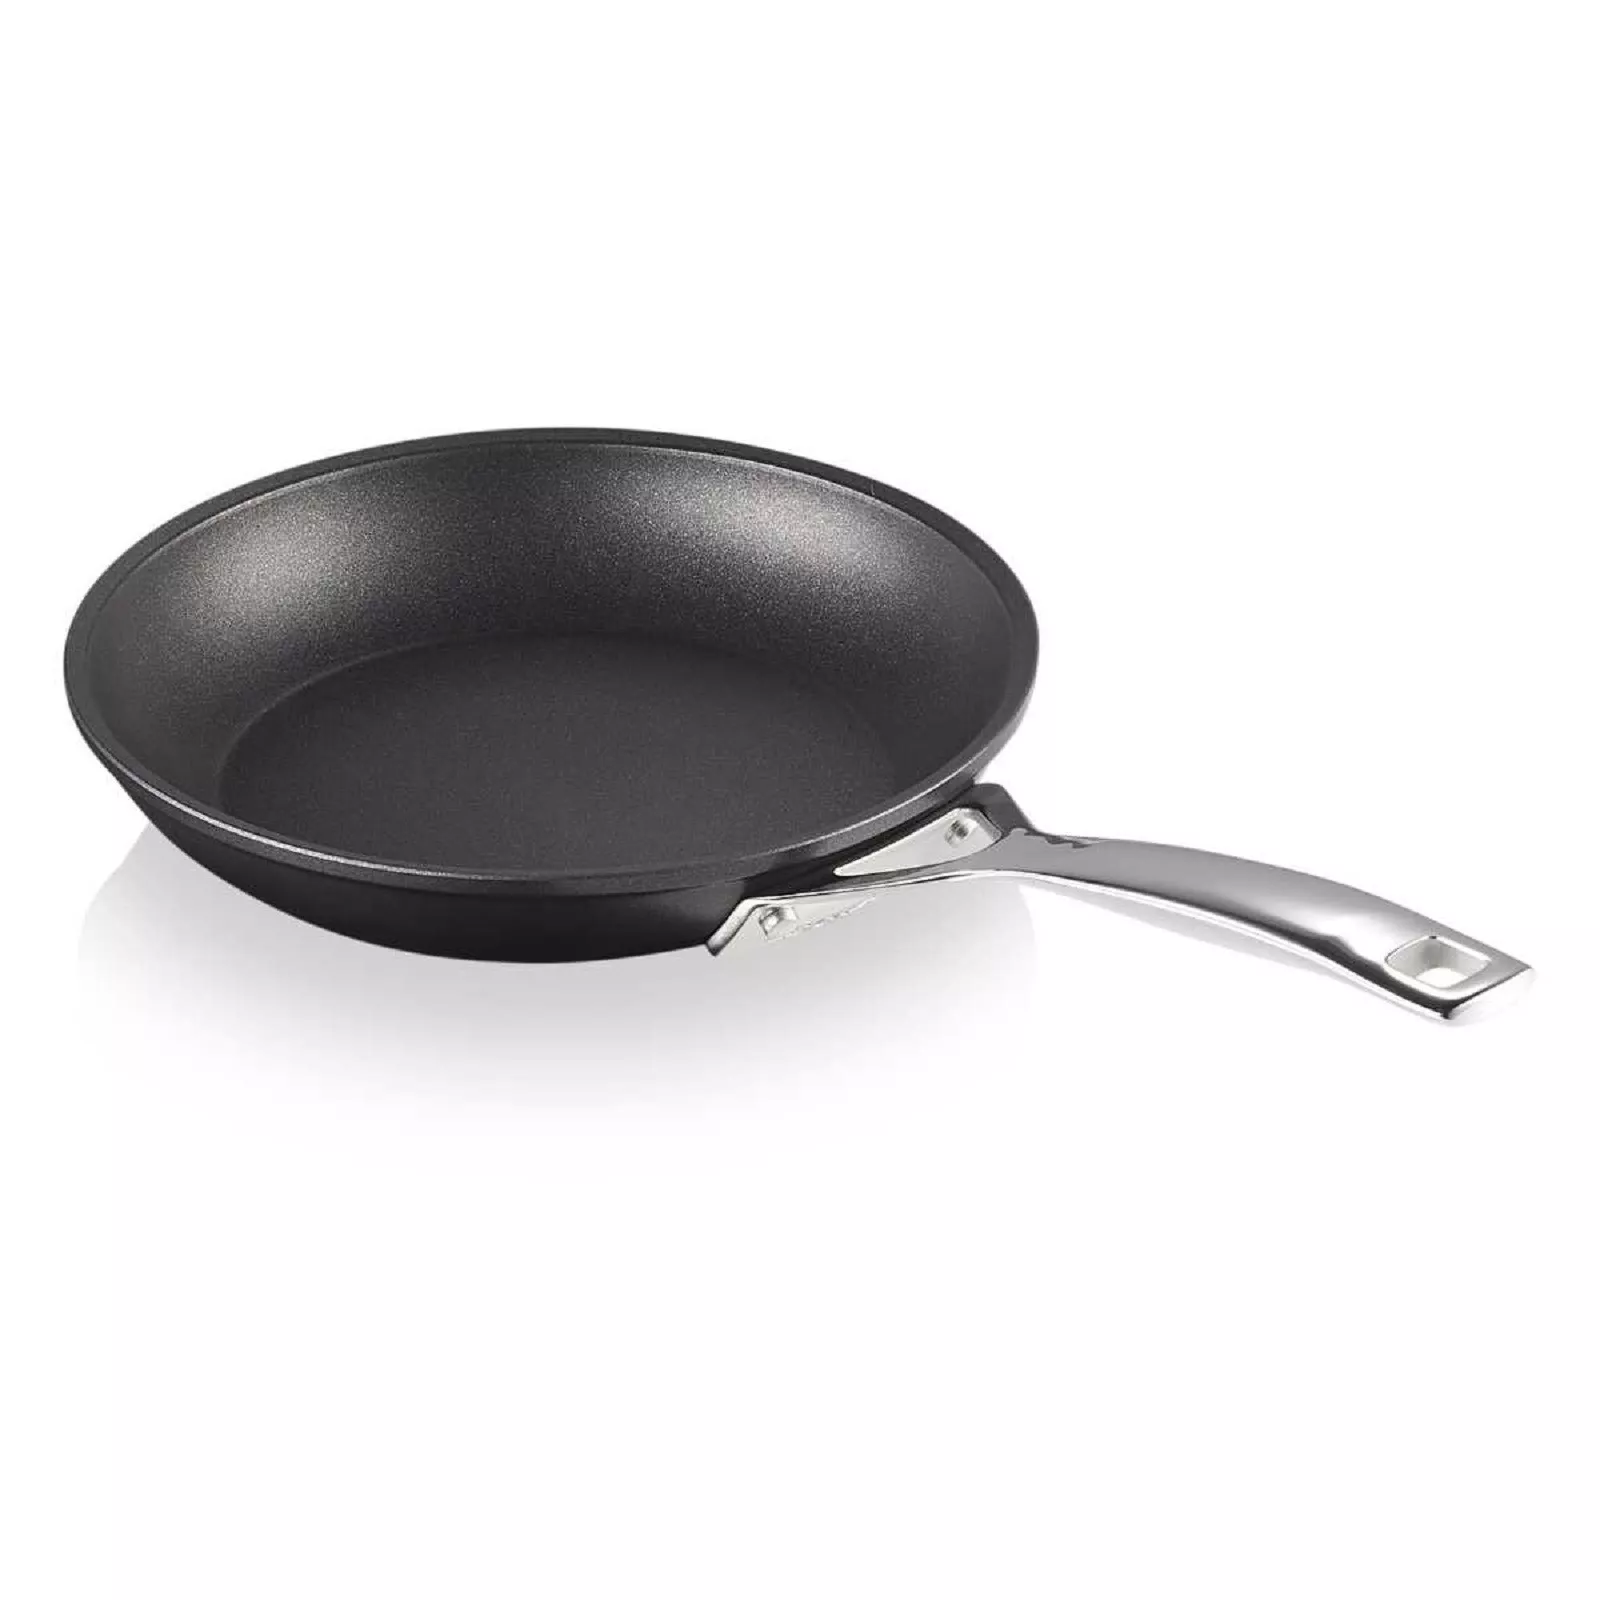 Сковорода антипригарная Le Creuset Tns & Cast Alu Black, диаметр 20 см (51112200010002) - Фото nav 1